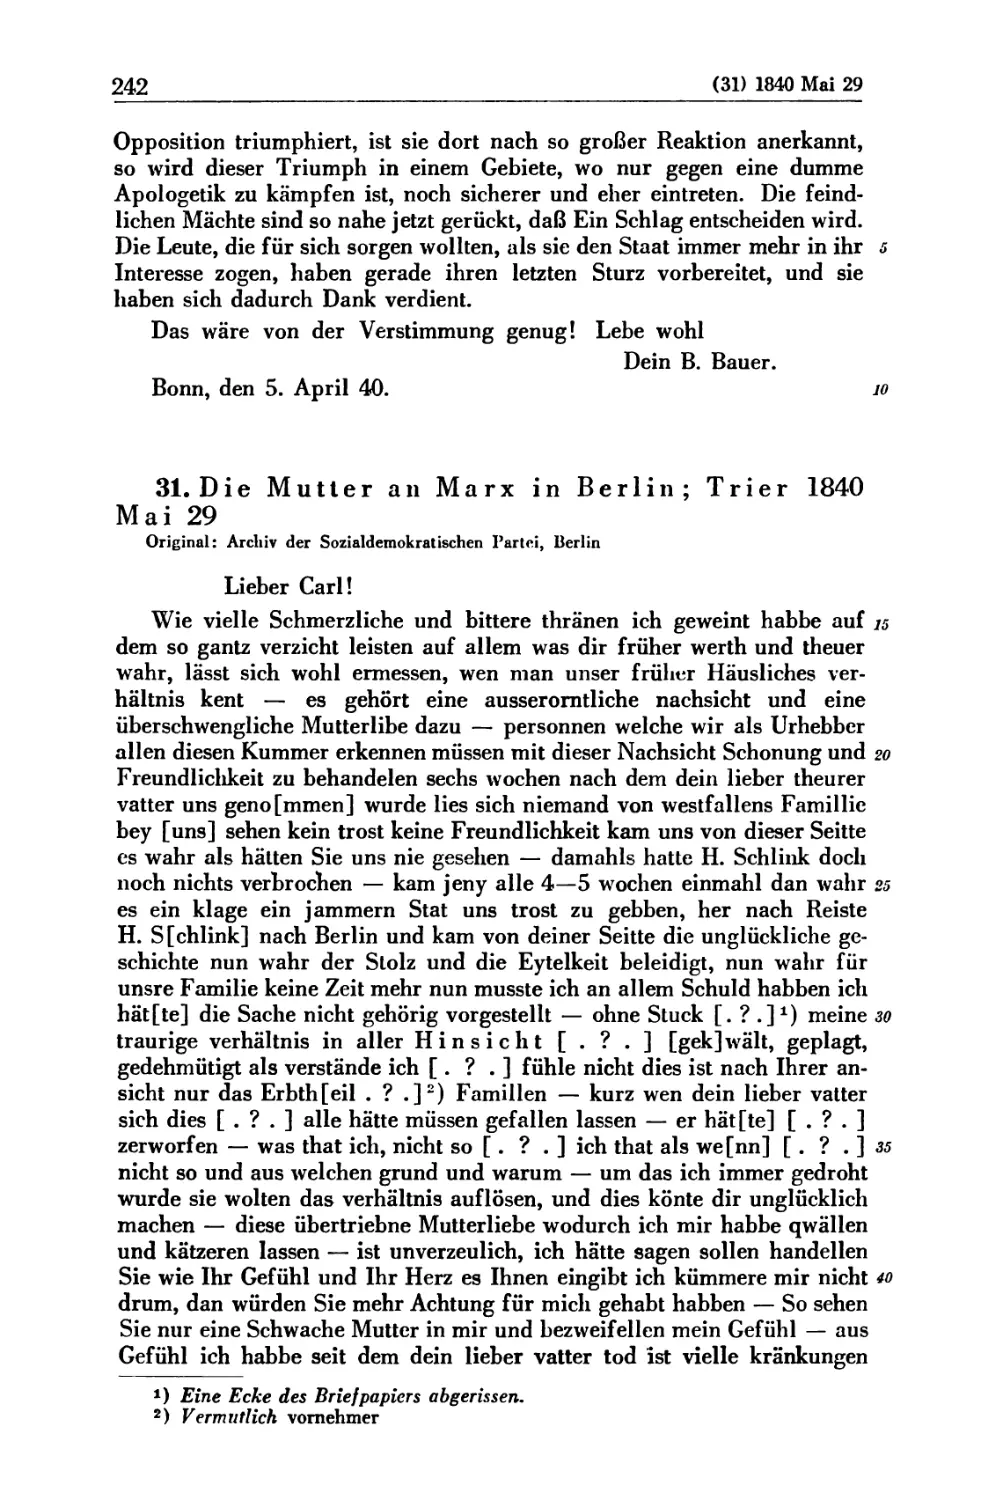 31. Die Mutter an Marx in Berlin; Trier 1840 Mai 29